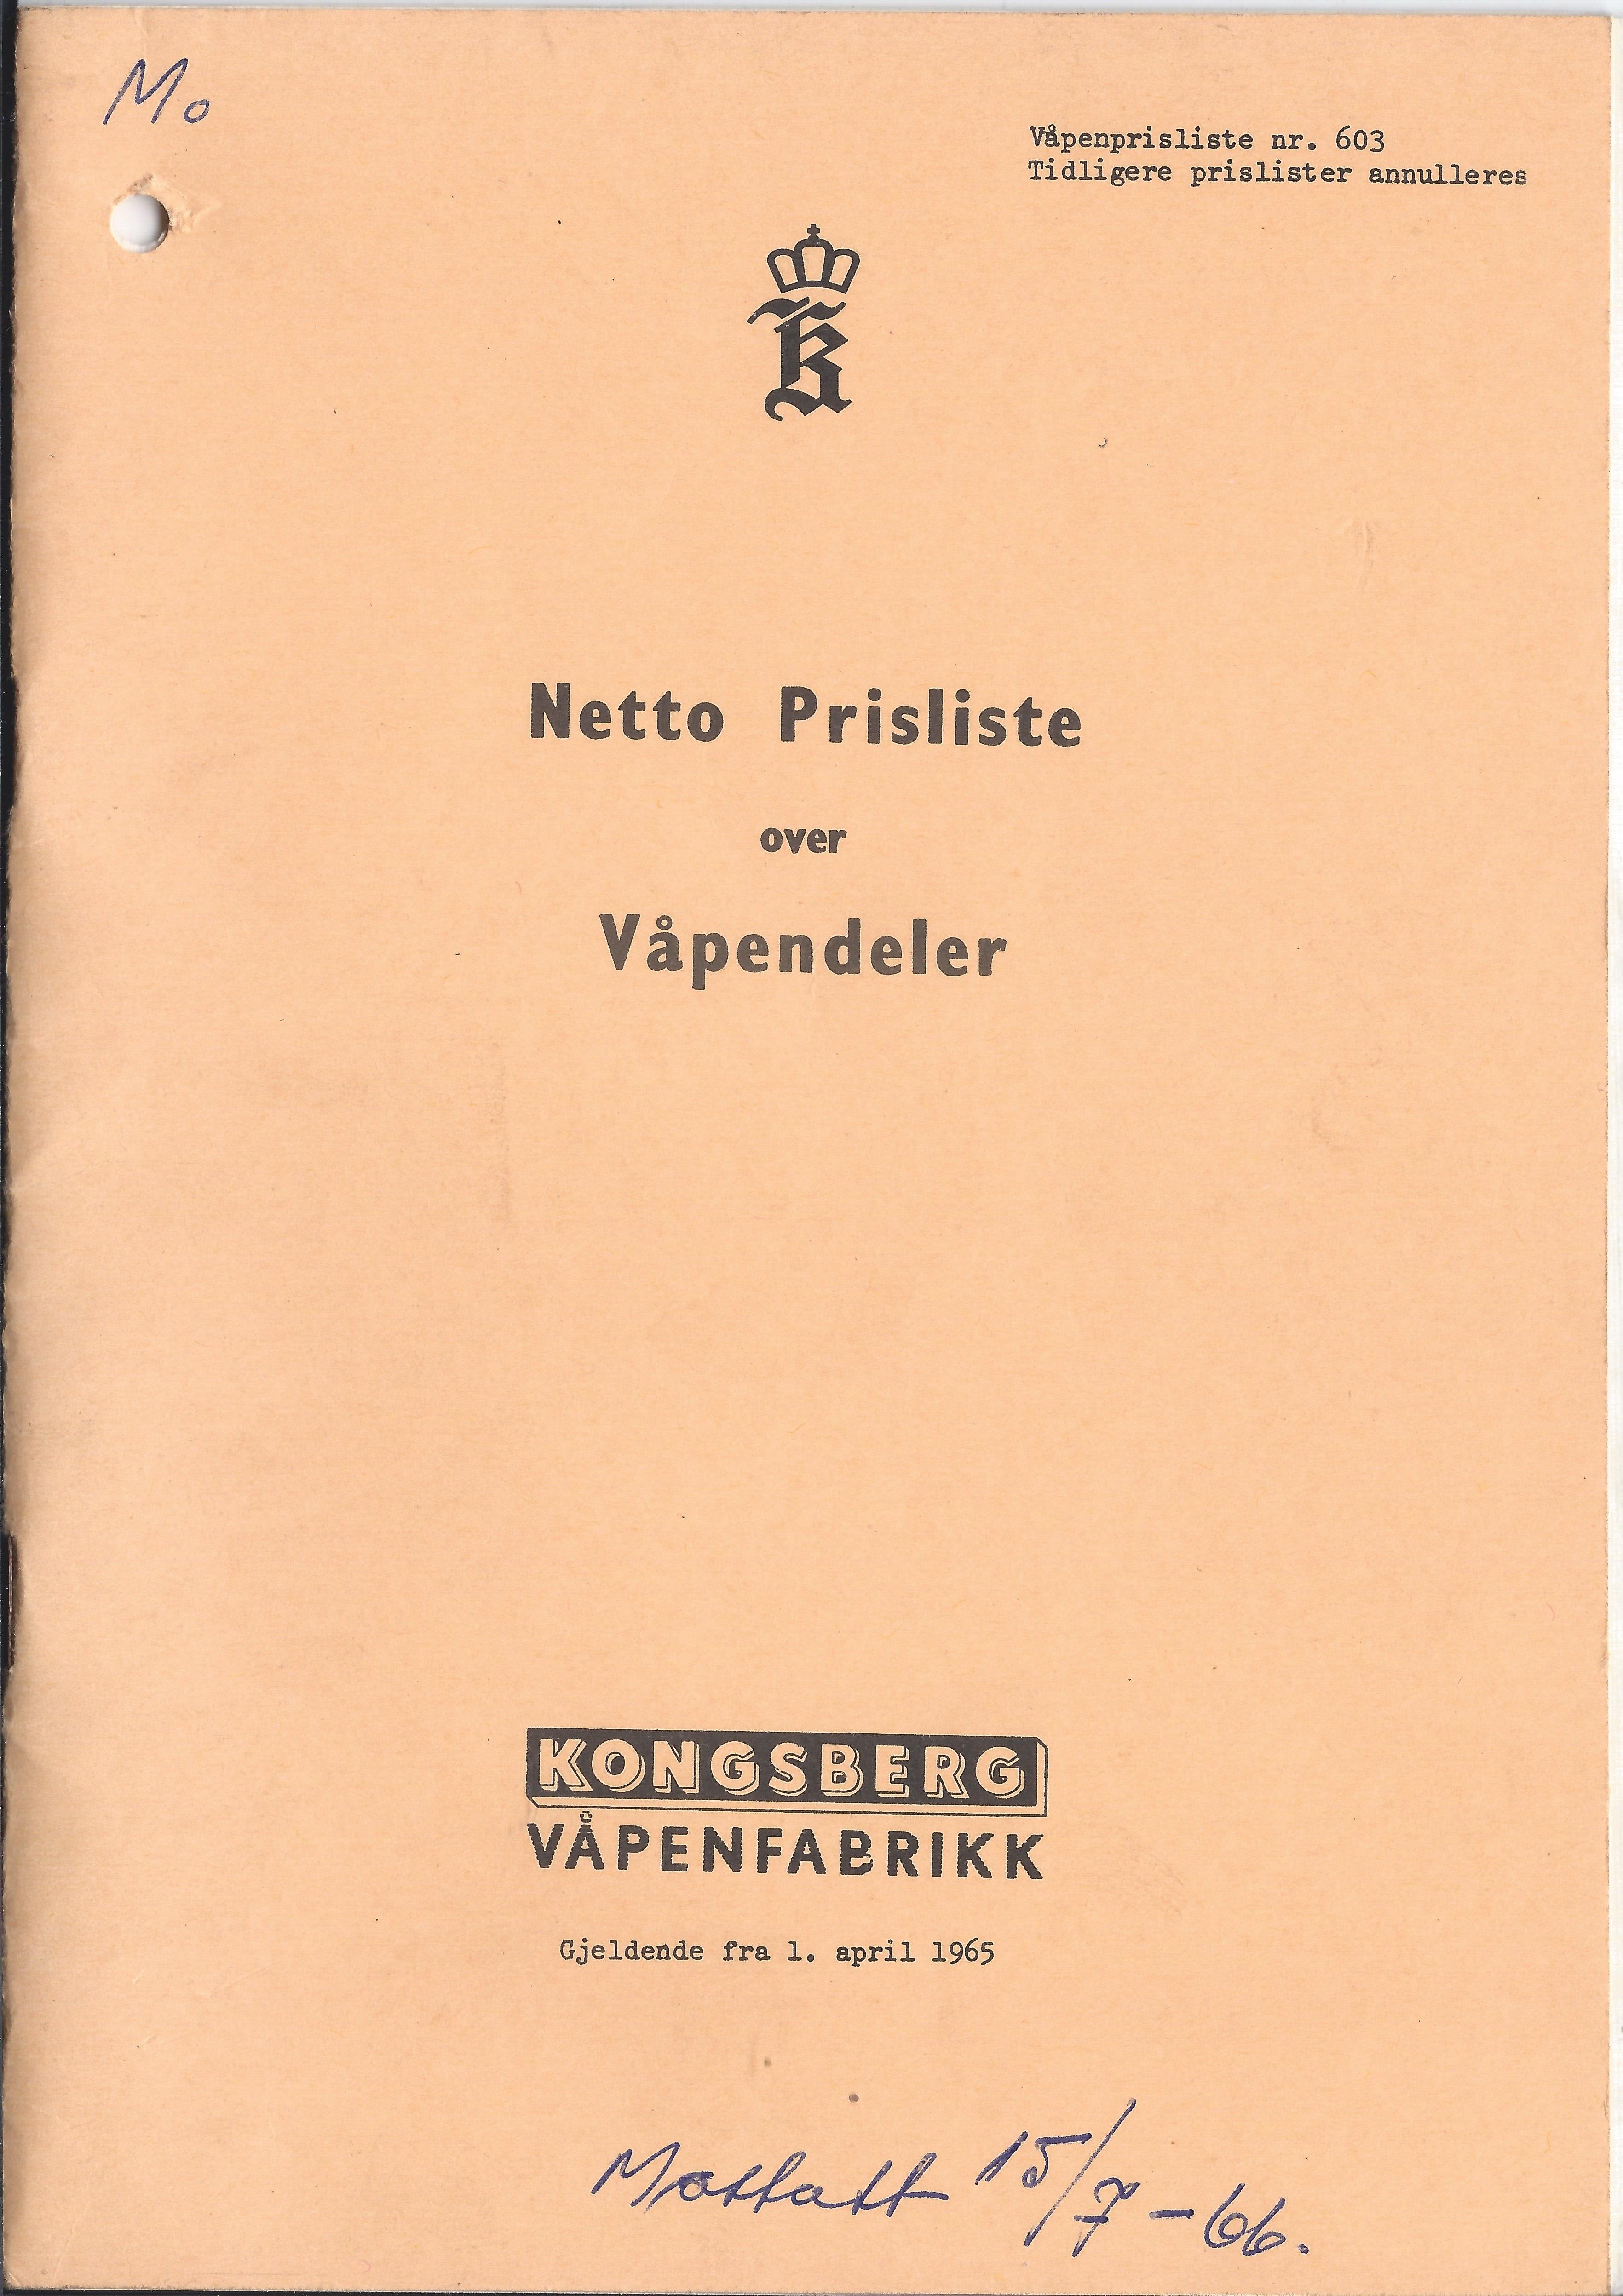 ./doc/KV/KV-Prisliste-Deler-Nr603-01.04.1965-1.jpg